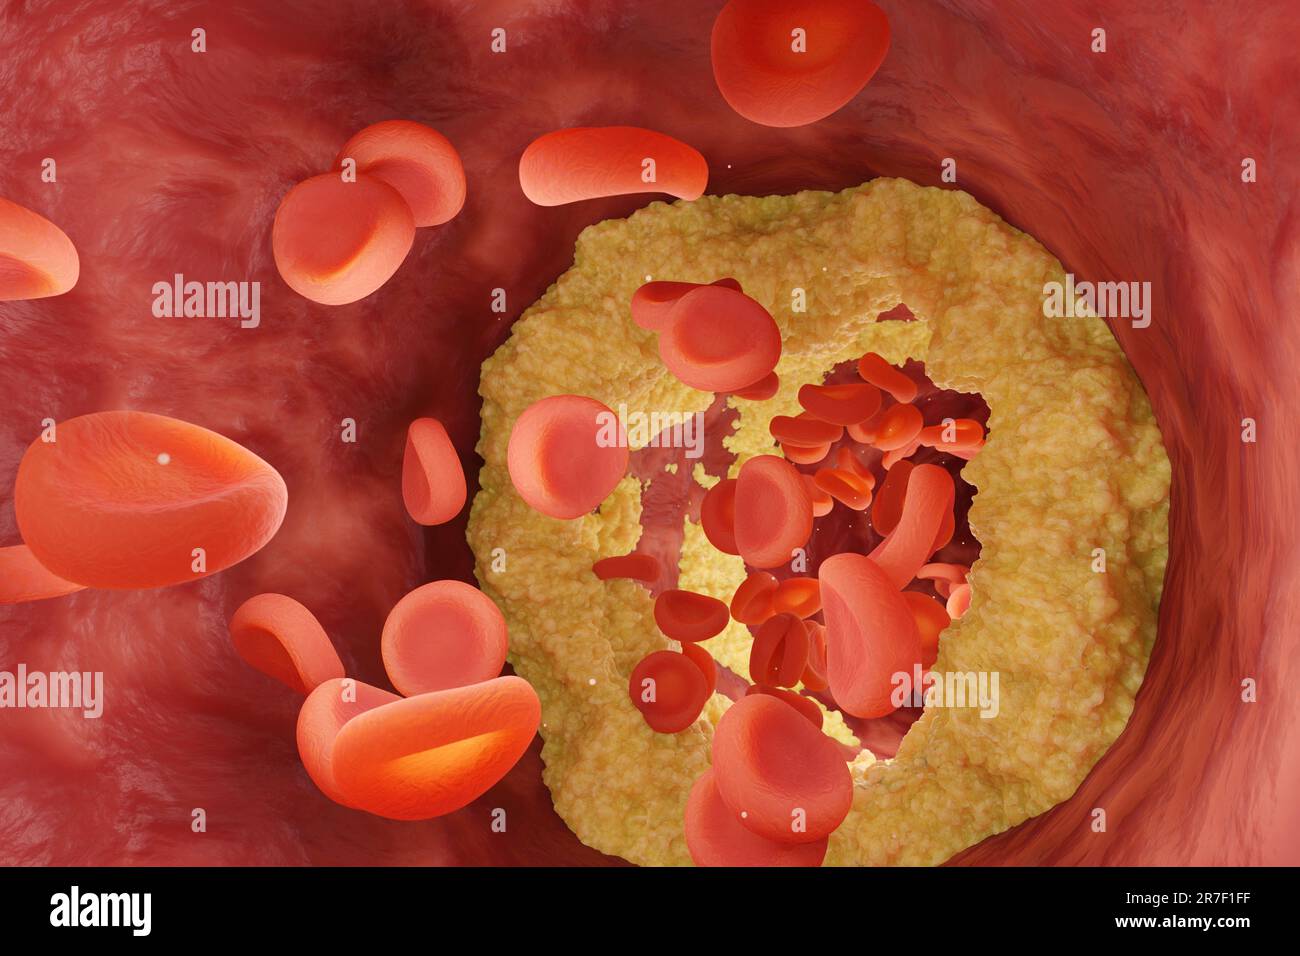 Vaso sanguigno ristretto dal colesterolo con globuli rossi che scorrono attraverso. Illustrazione del concetto di condizione medica di colesterolo alto Foto Stock